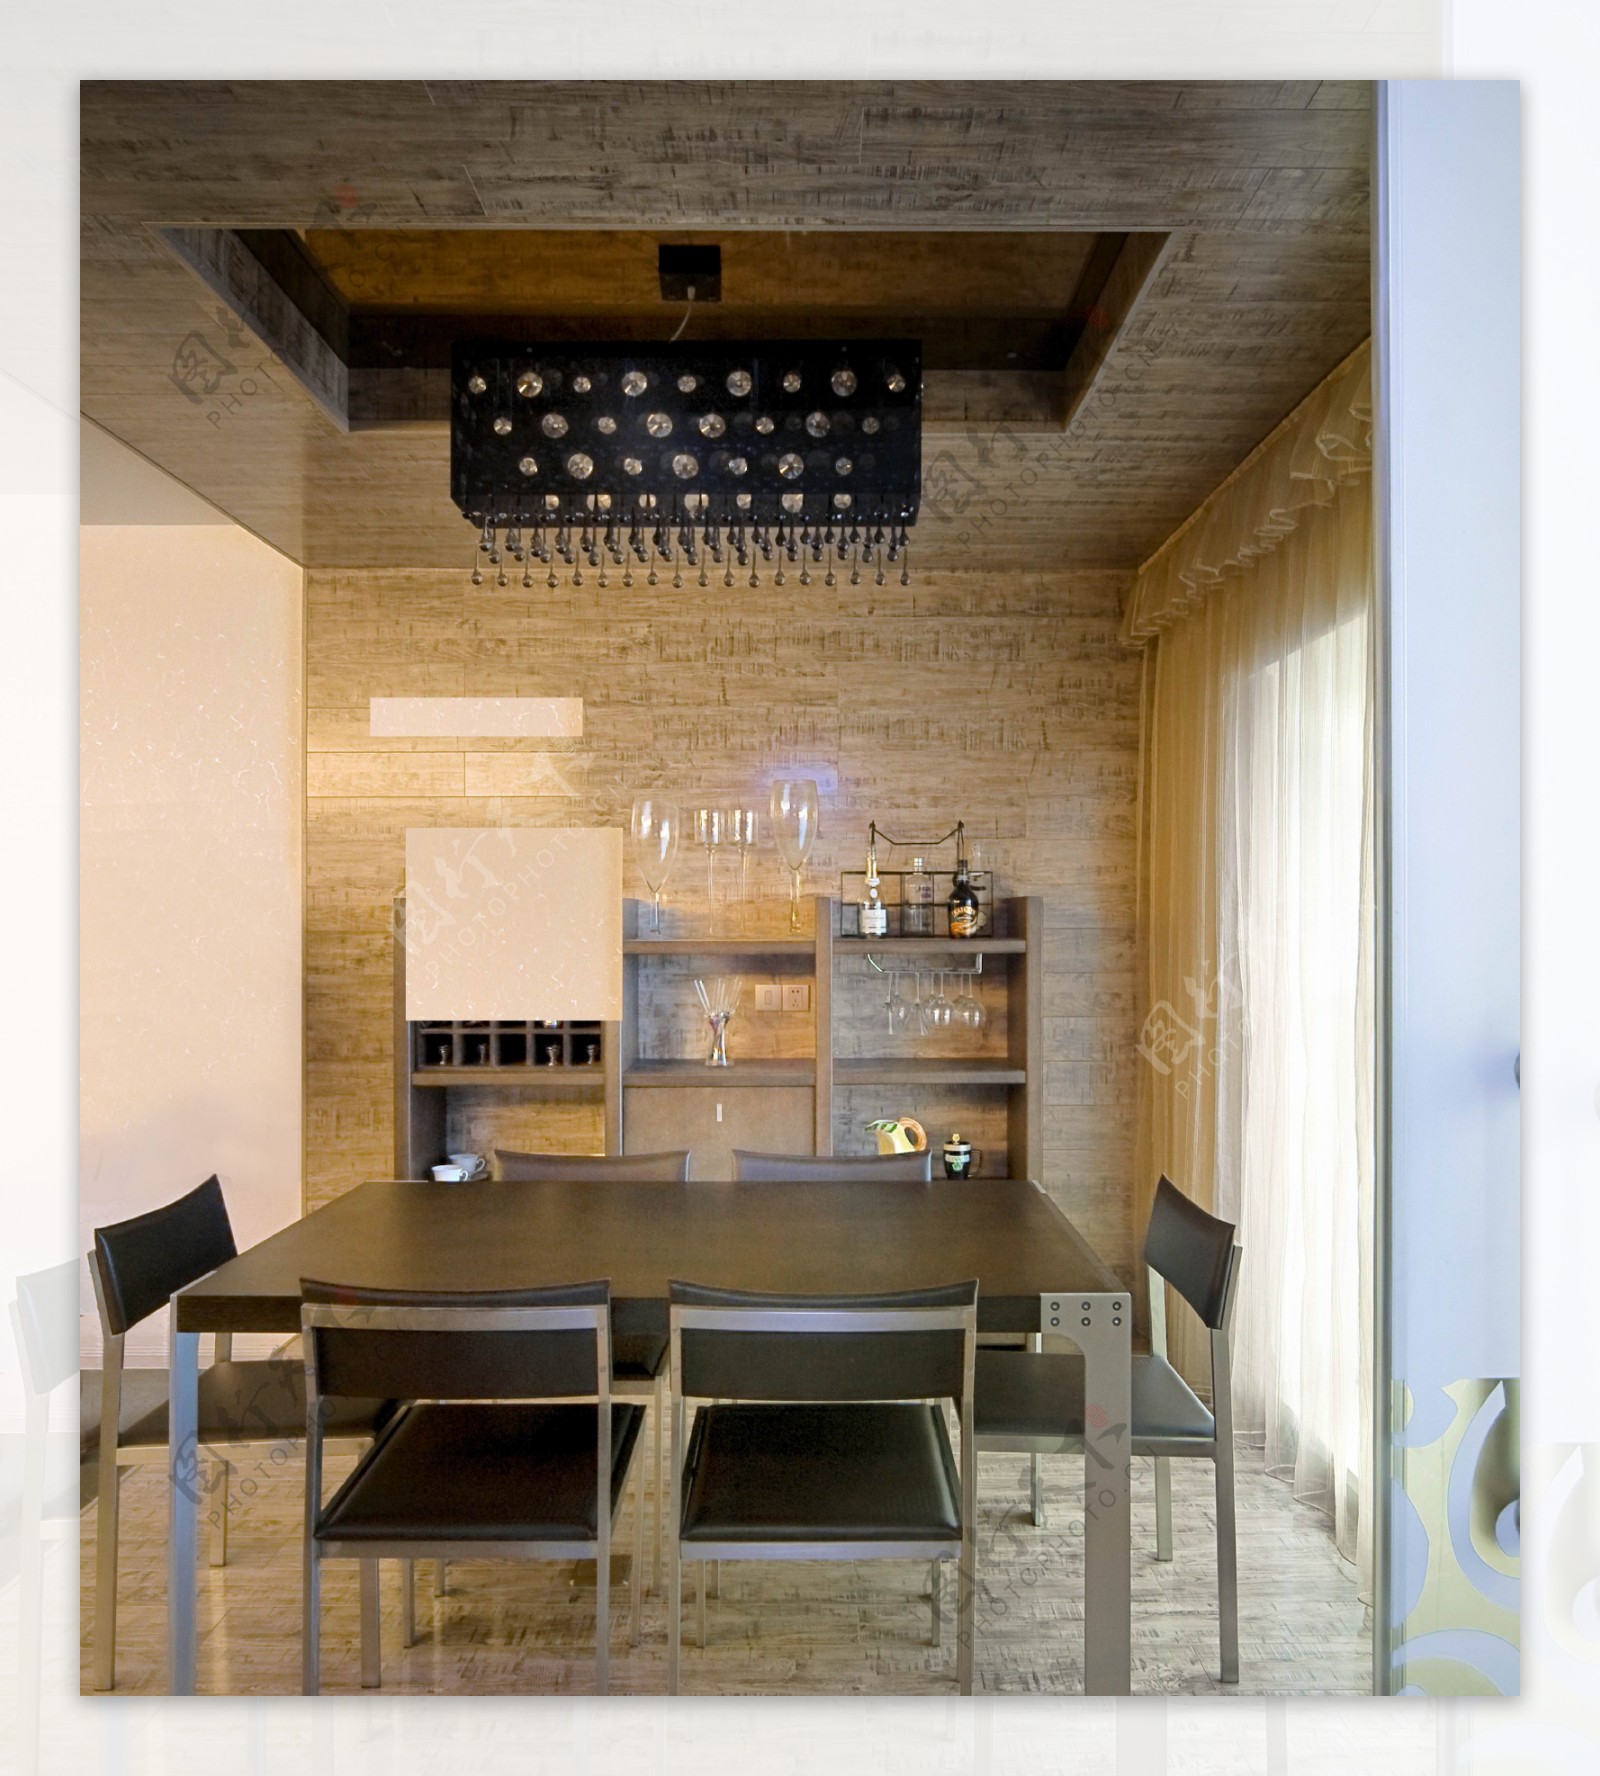 现代简约风室内设计餐厅效果图JPG